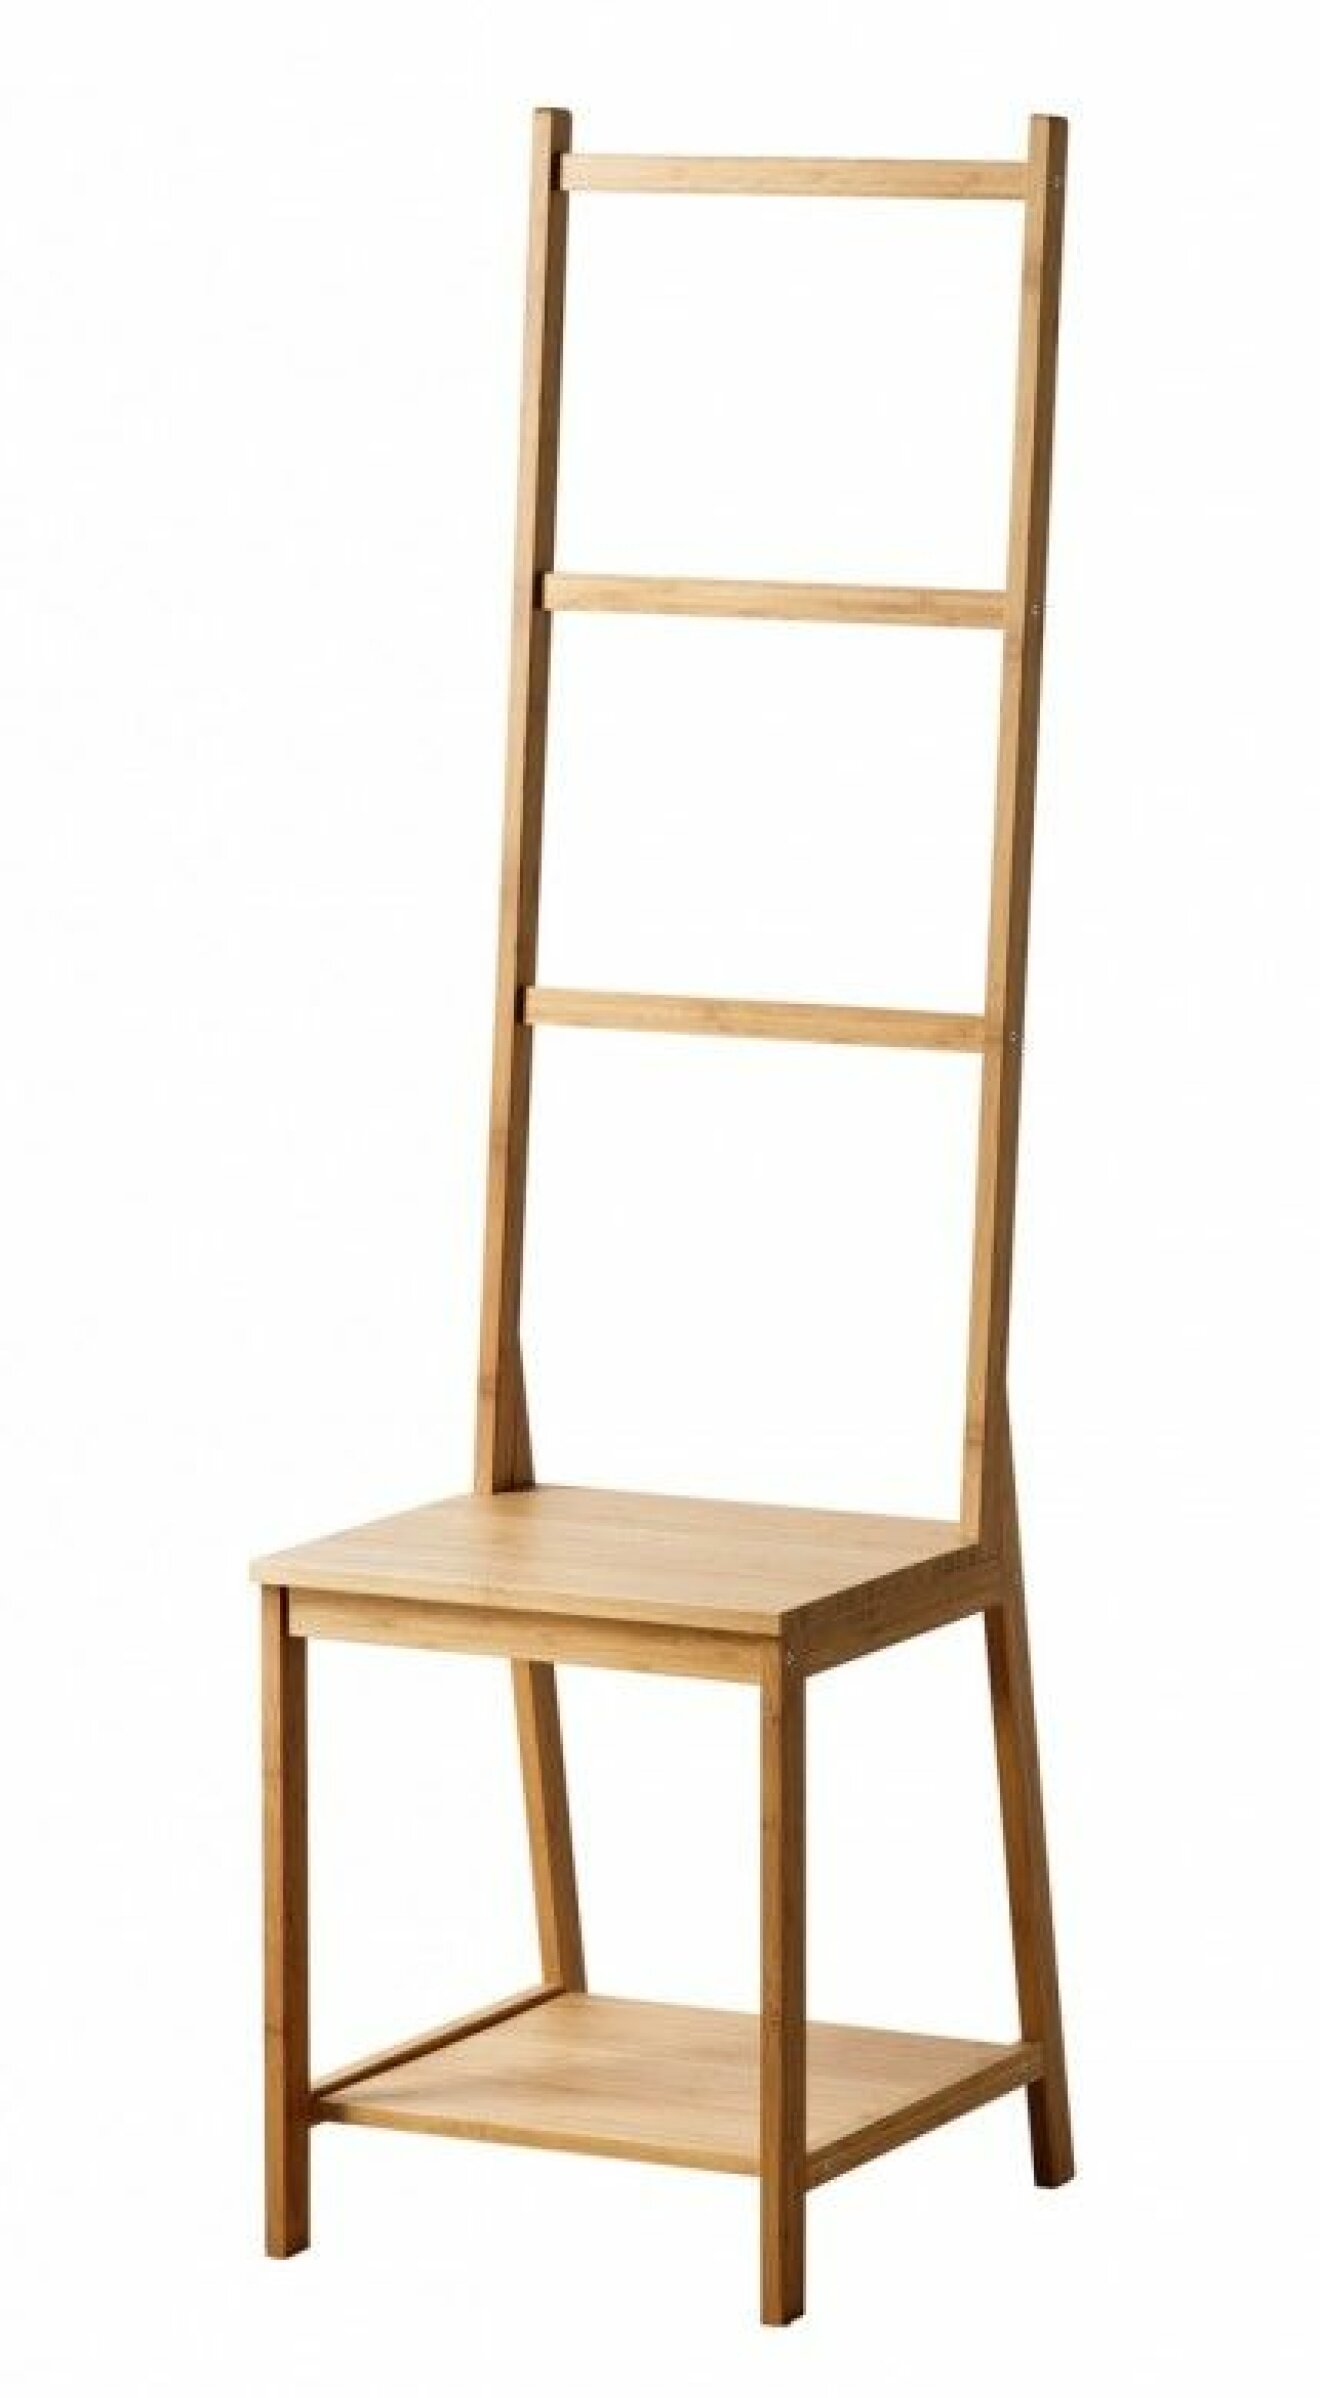  Häng upp! Stol med inbyggd förvaring Rågrund, 299 kr, Ikea.